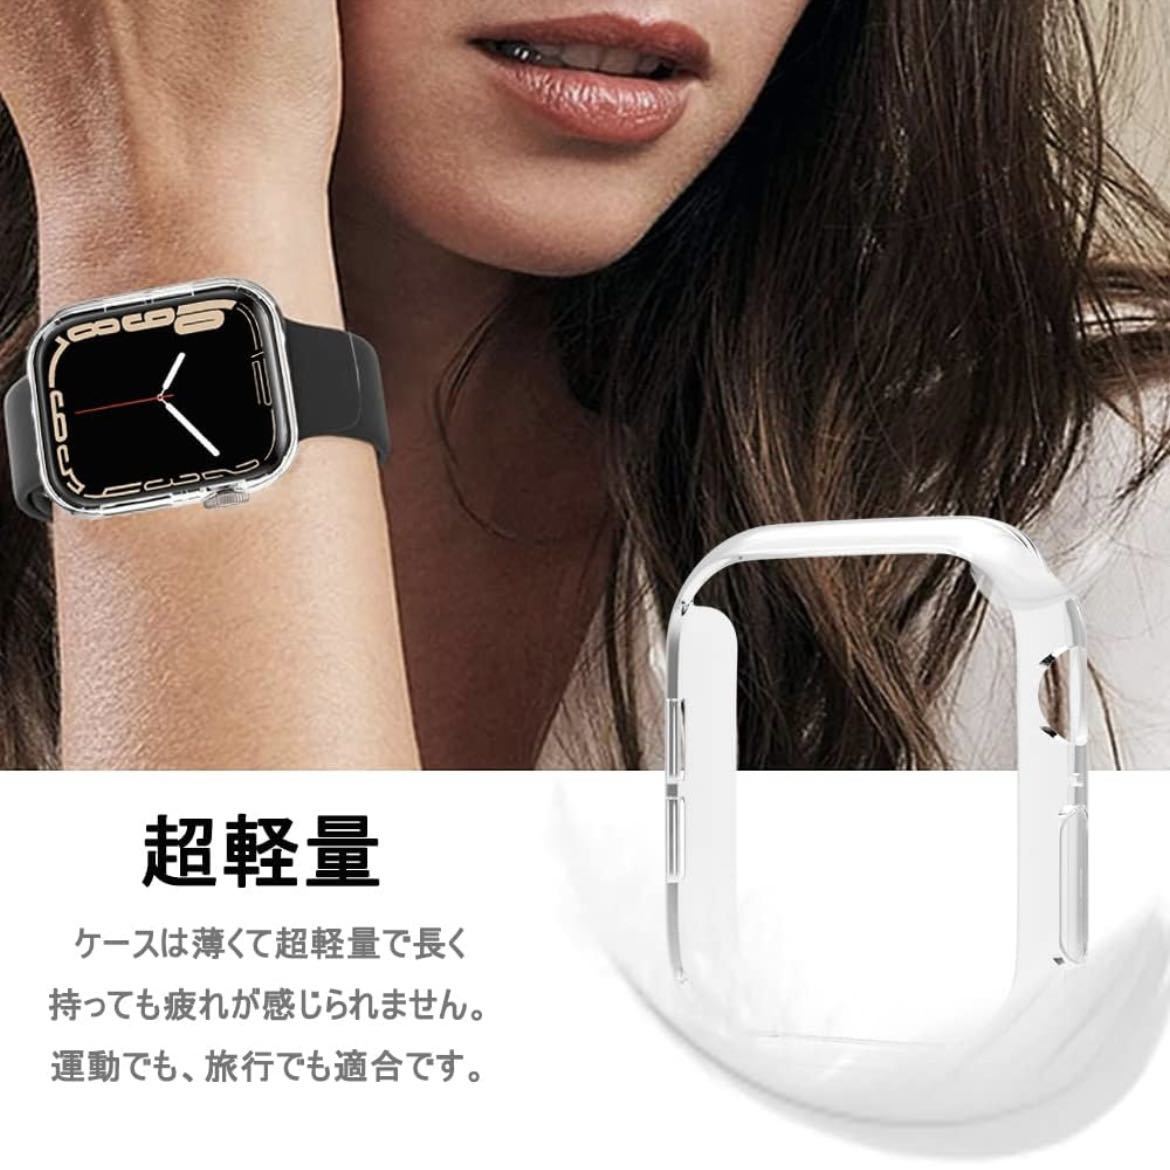 【開封のみ】Miimall ★対応Apple Watch Series8/7 45mm クリアケース 【2021新モデル】 アップルウォッチ 45mm 保護カバー　 PC材質